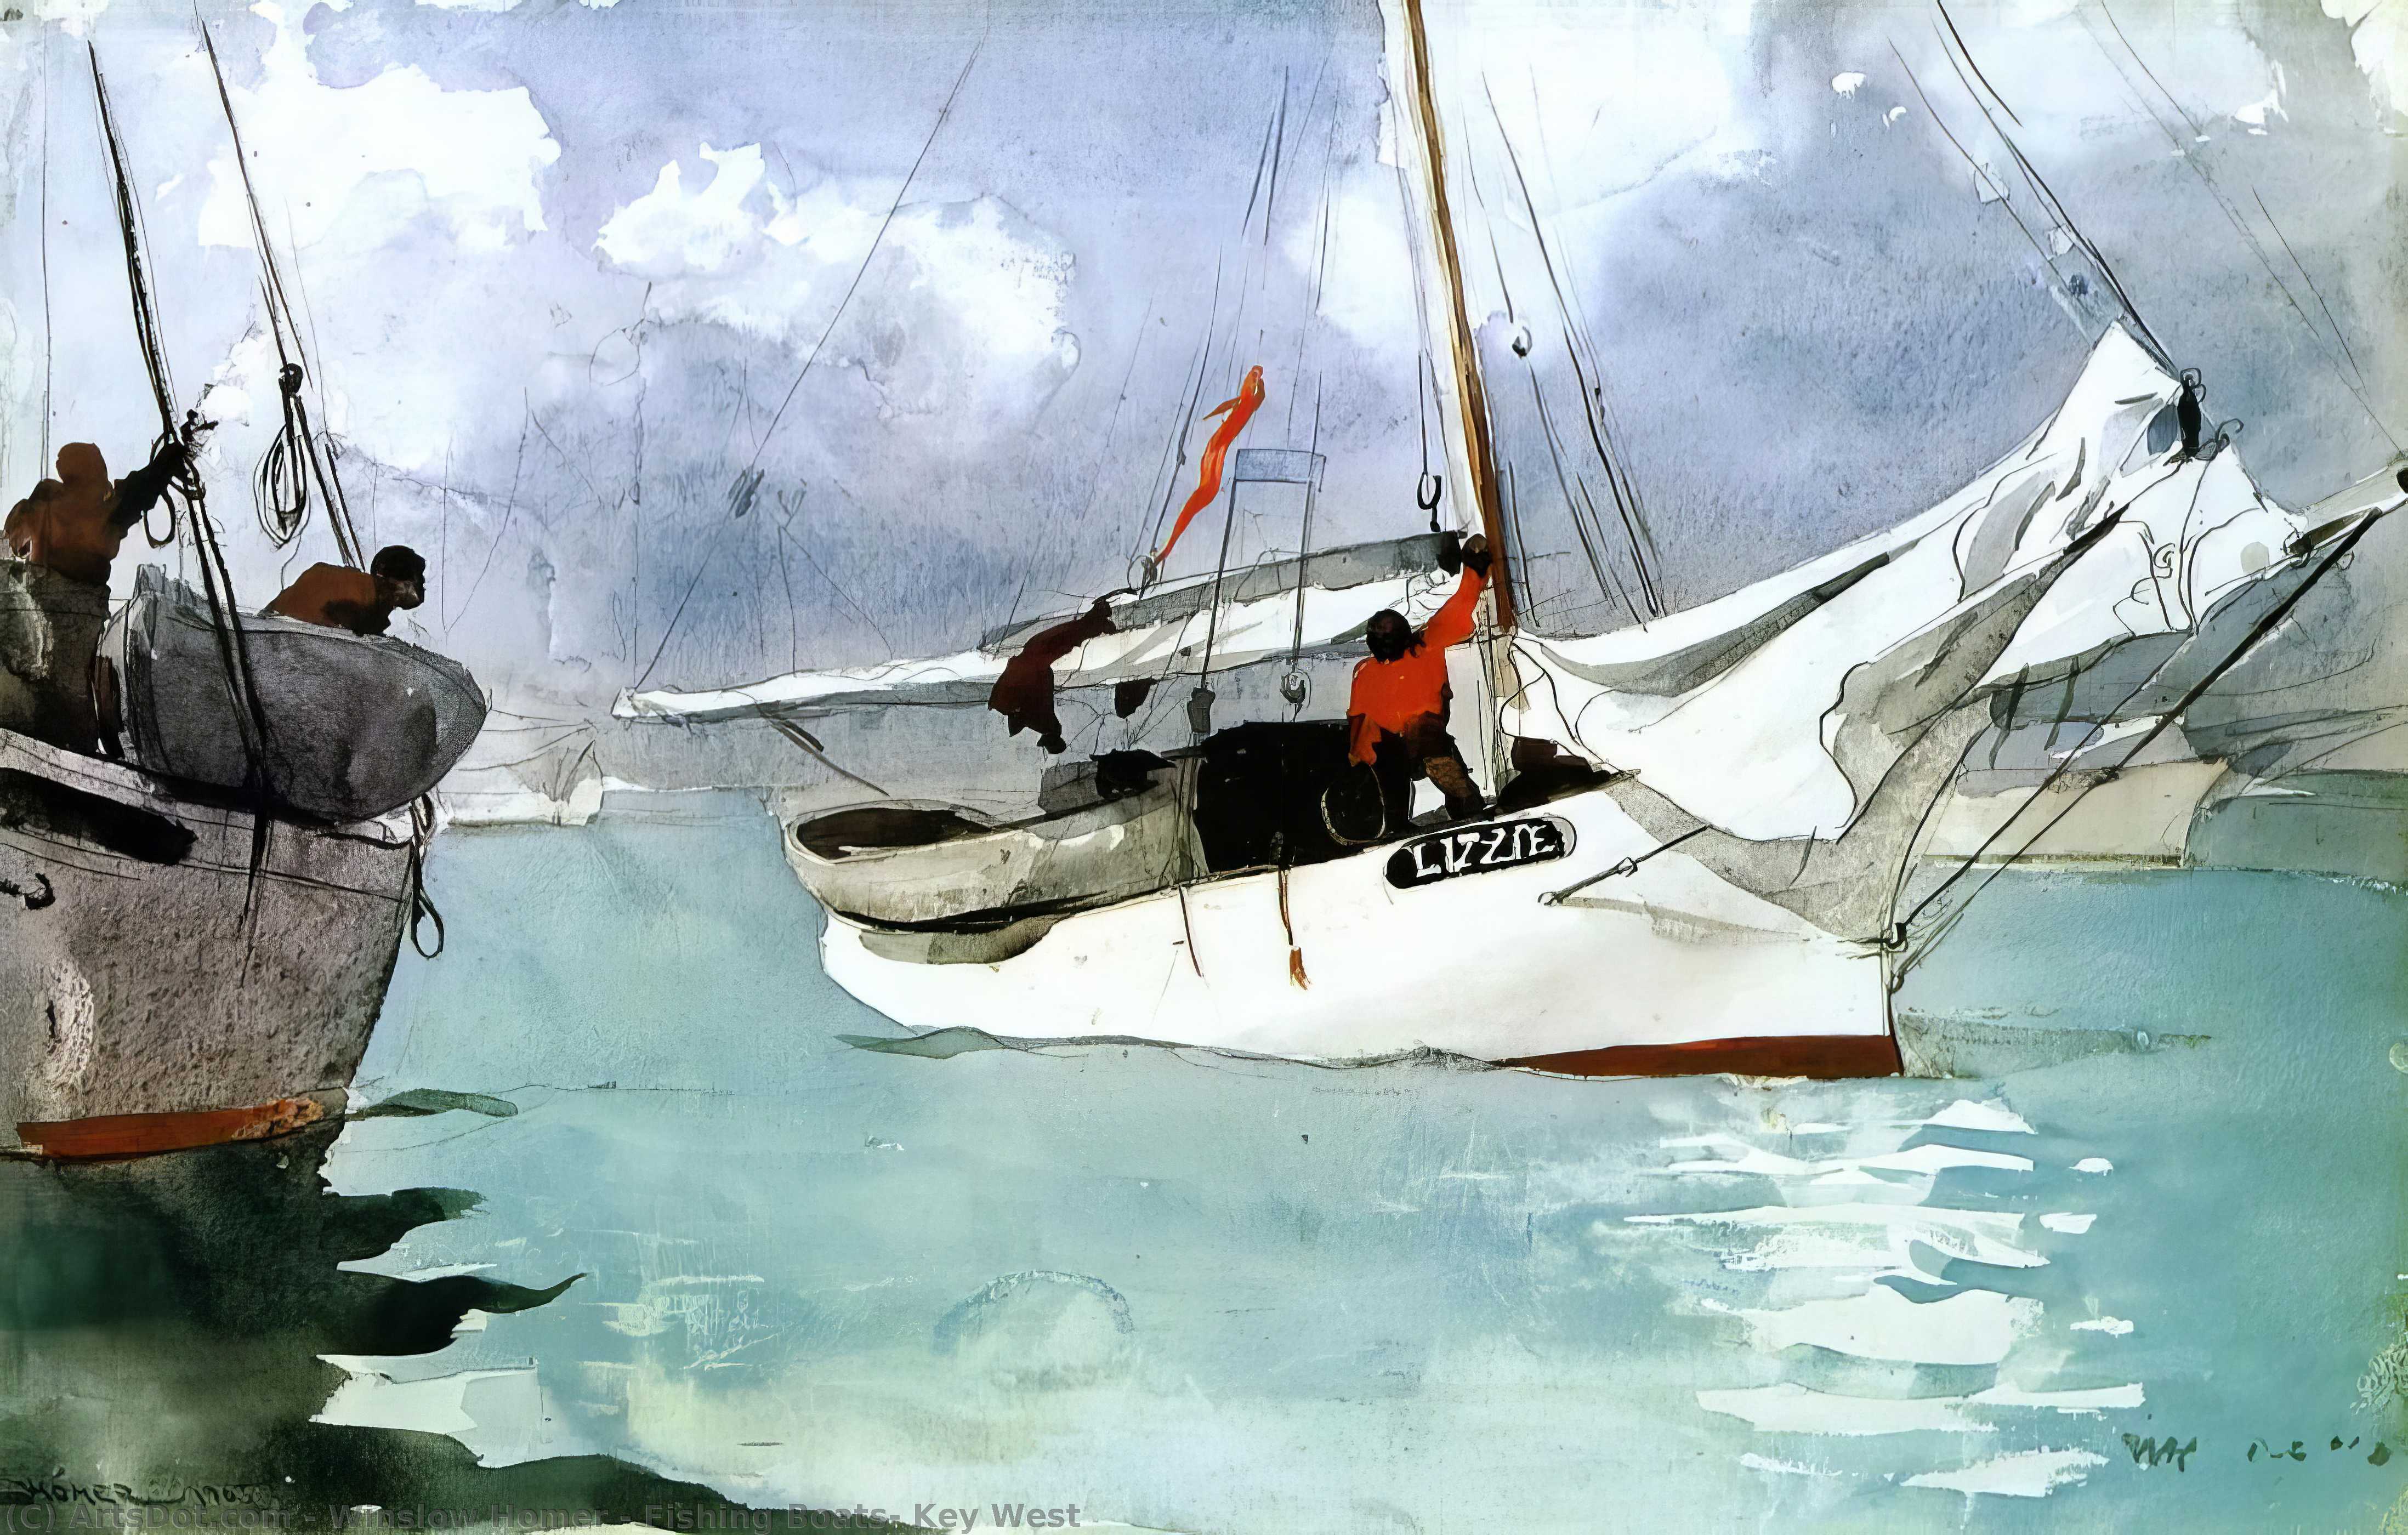 Compre Museu De Reproduções De Arte Barcos de pesca, Key West, 1903 por Winslow Homer (1836-1910, United States) | ArtsDot.com